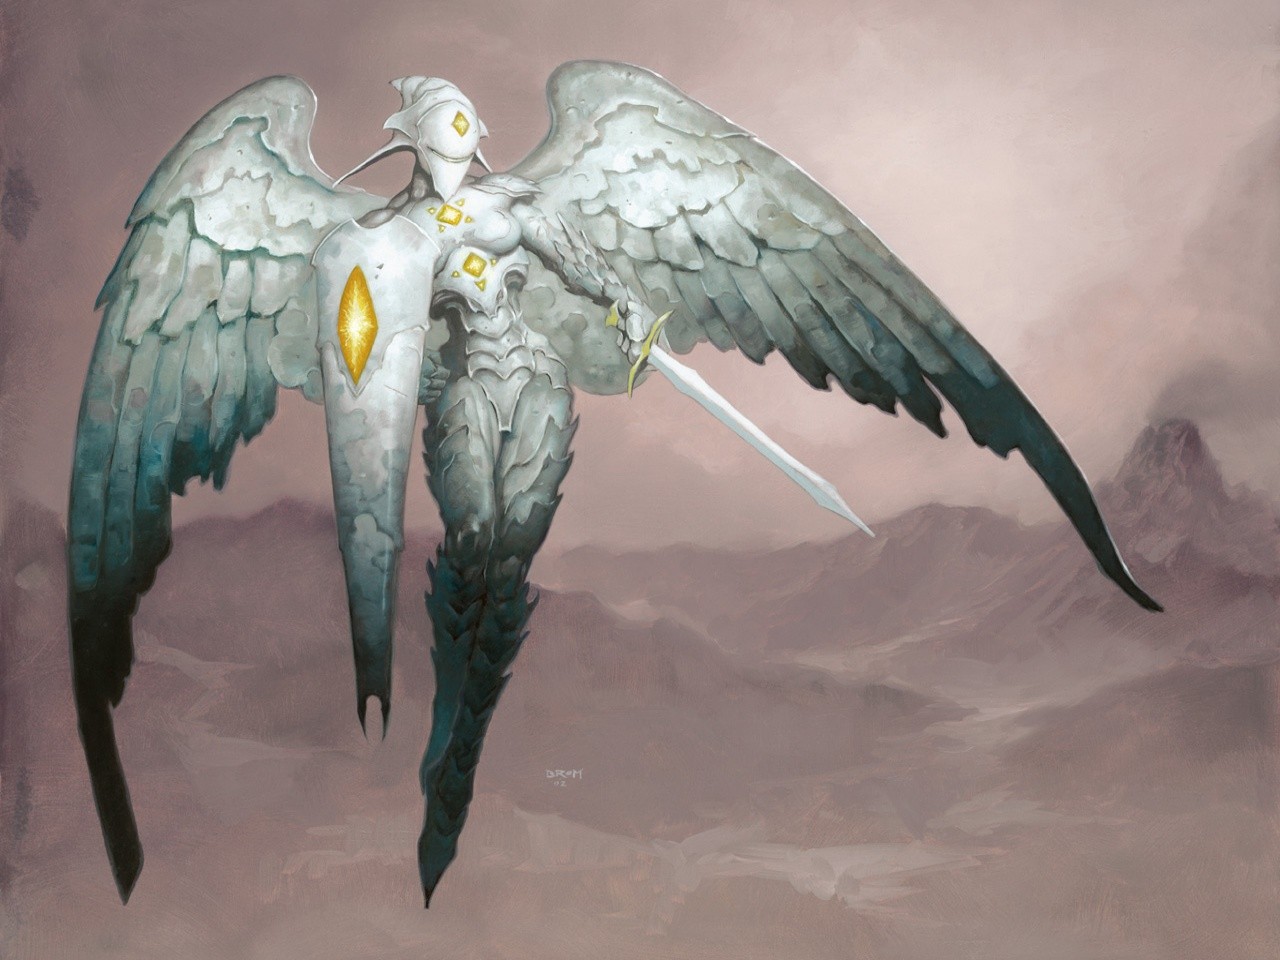 General 1280x960 Magic: The Gathering fantasy art wings sword